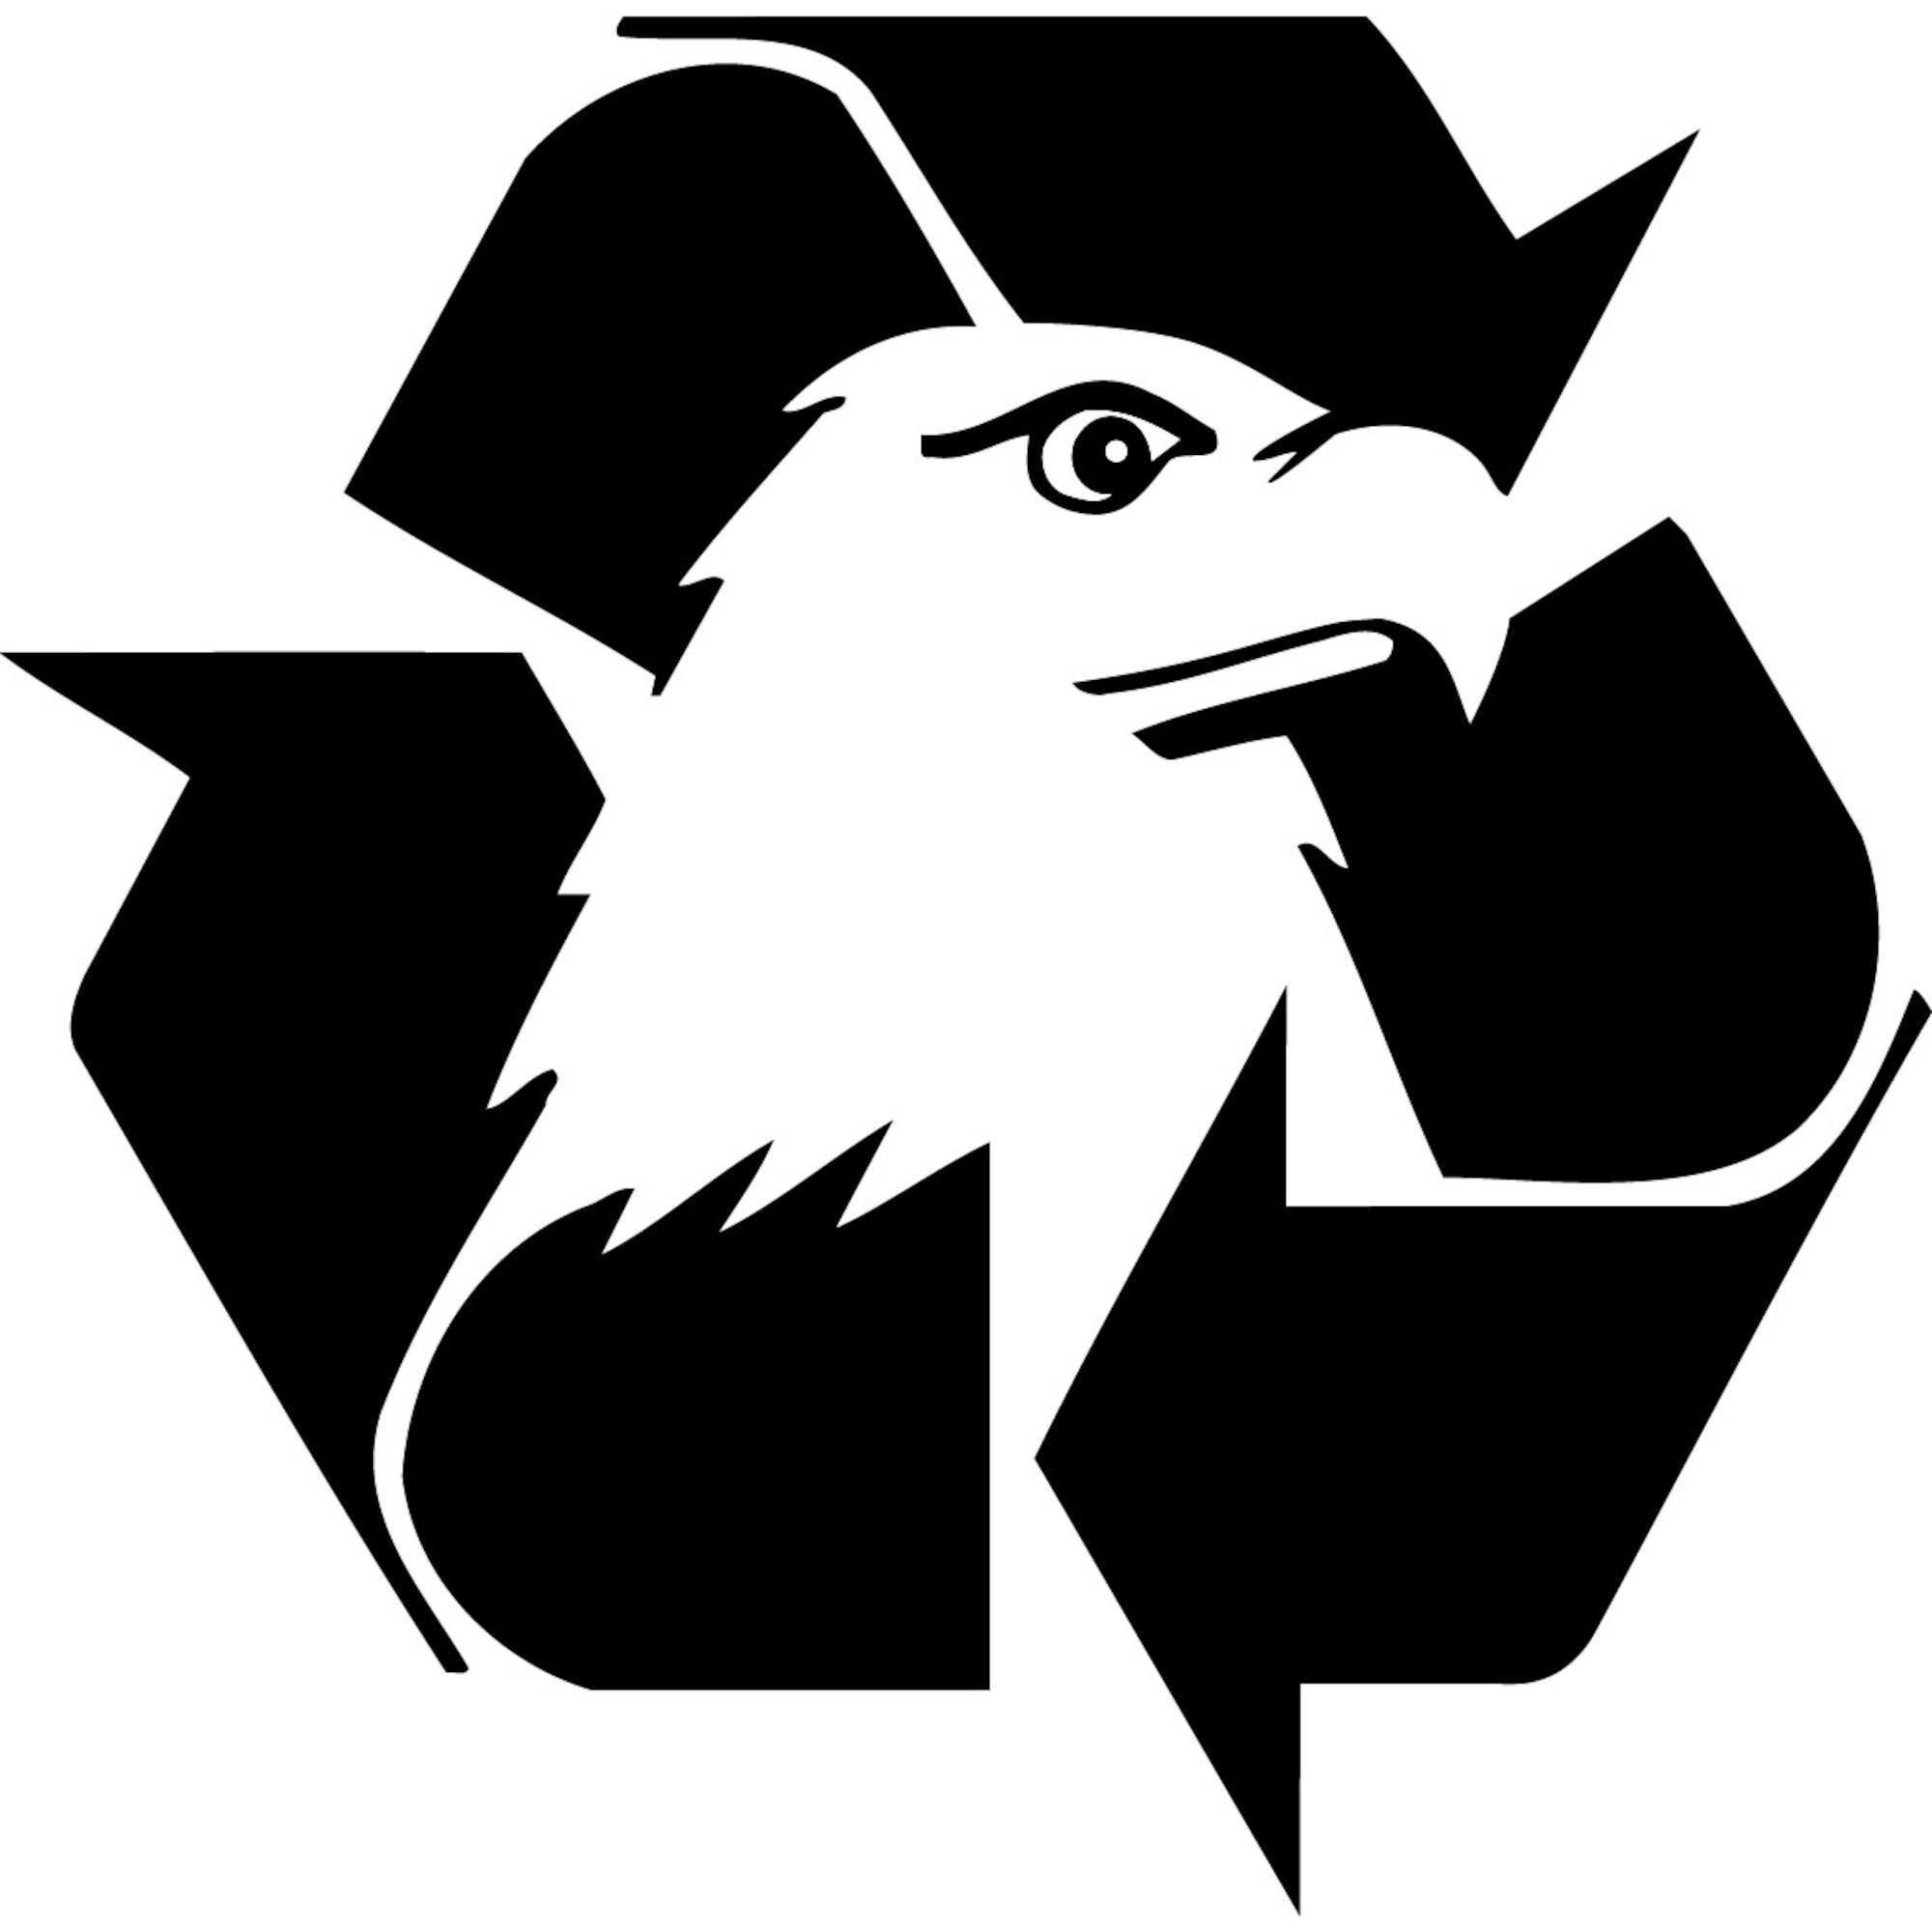 U.S. federal government recycling logo (courtesy of epa.gov)